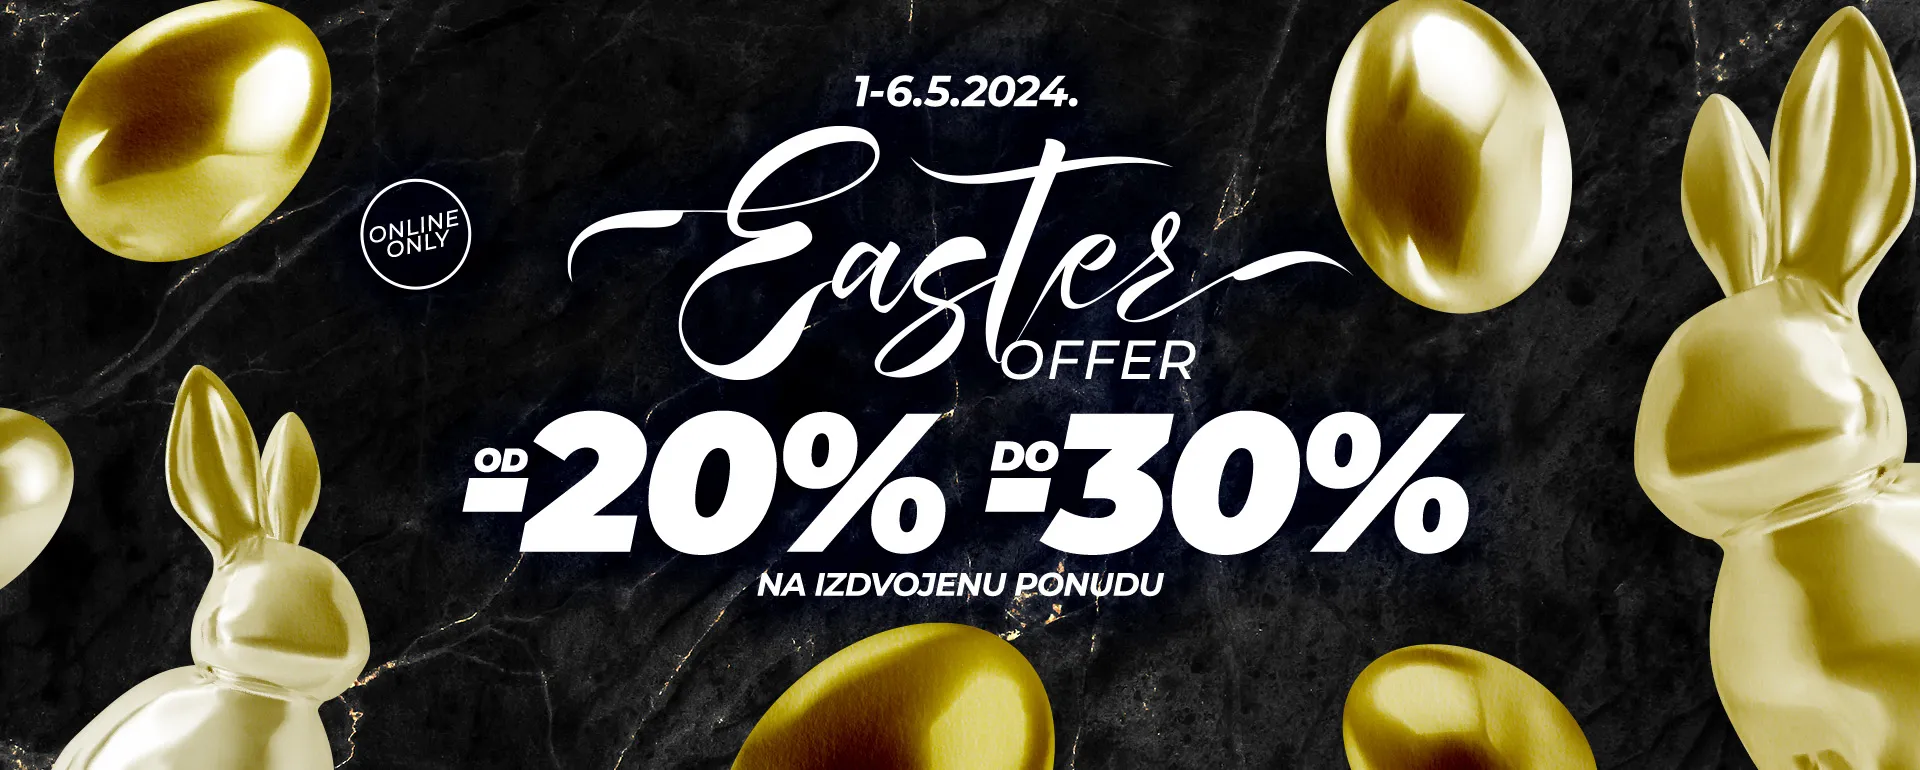 Easter offer